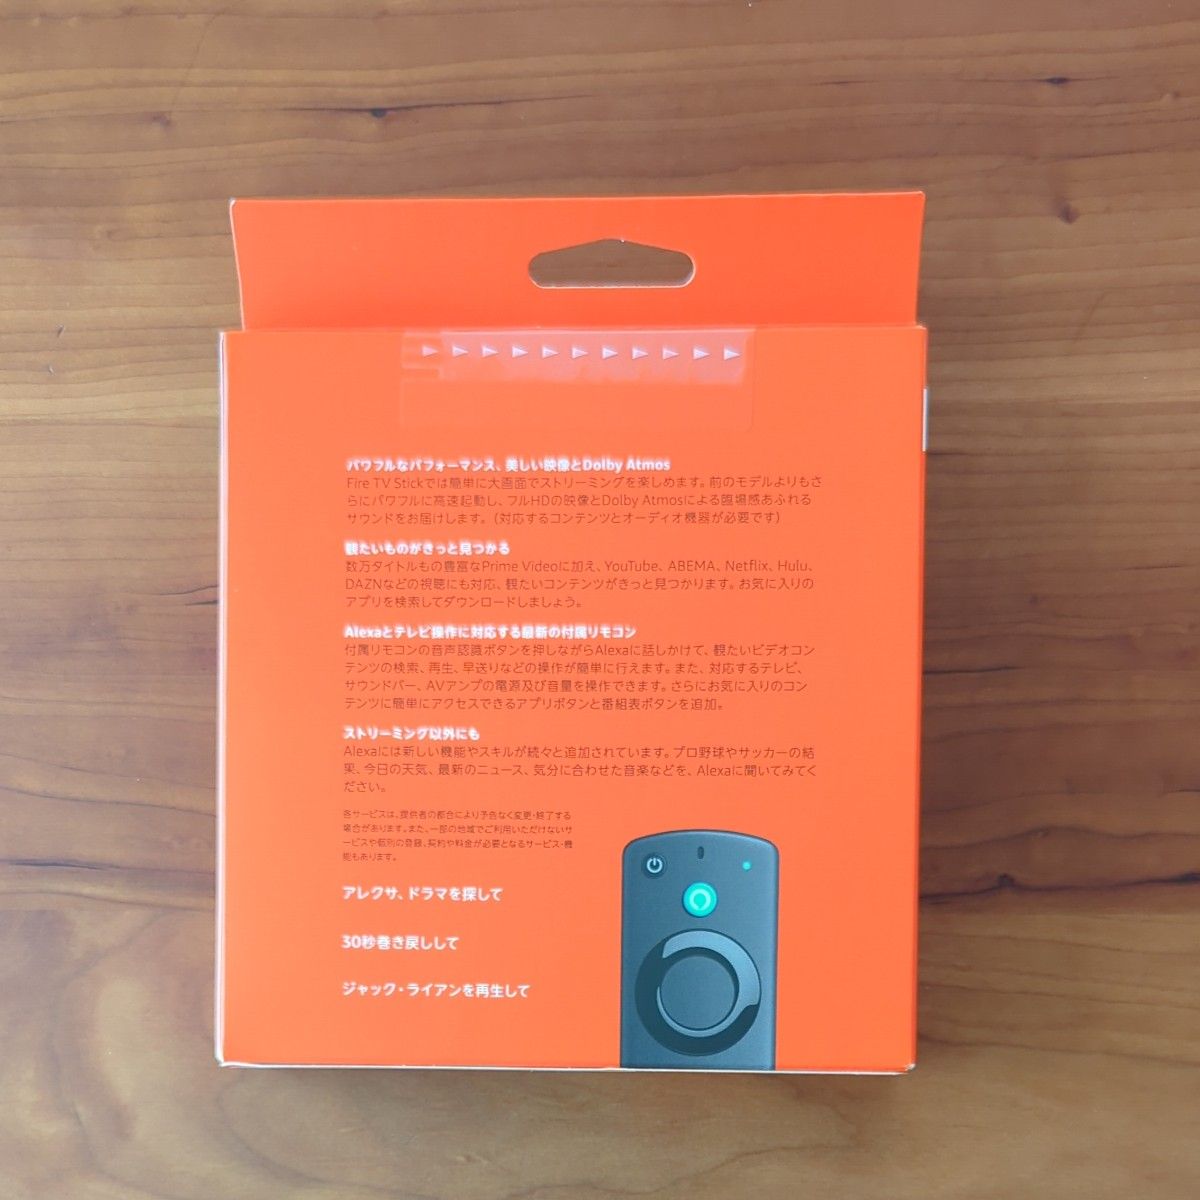 新品・未開封 Fire TV Stick 第3世代 Alexa 対応音声認識リモコン付属